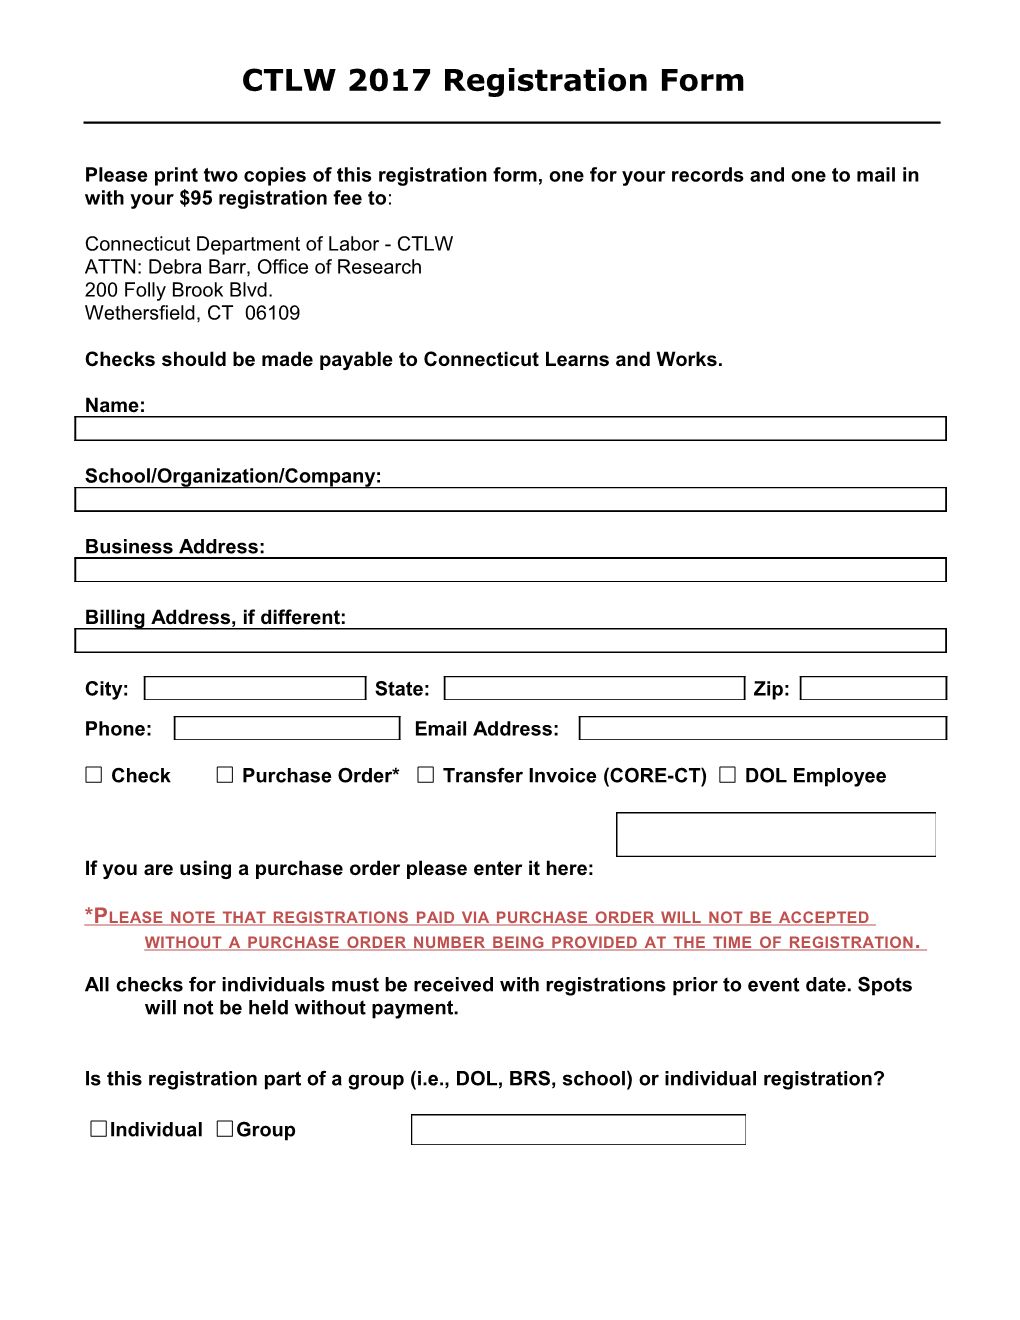 CTLW 2017Registration Form